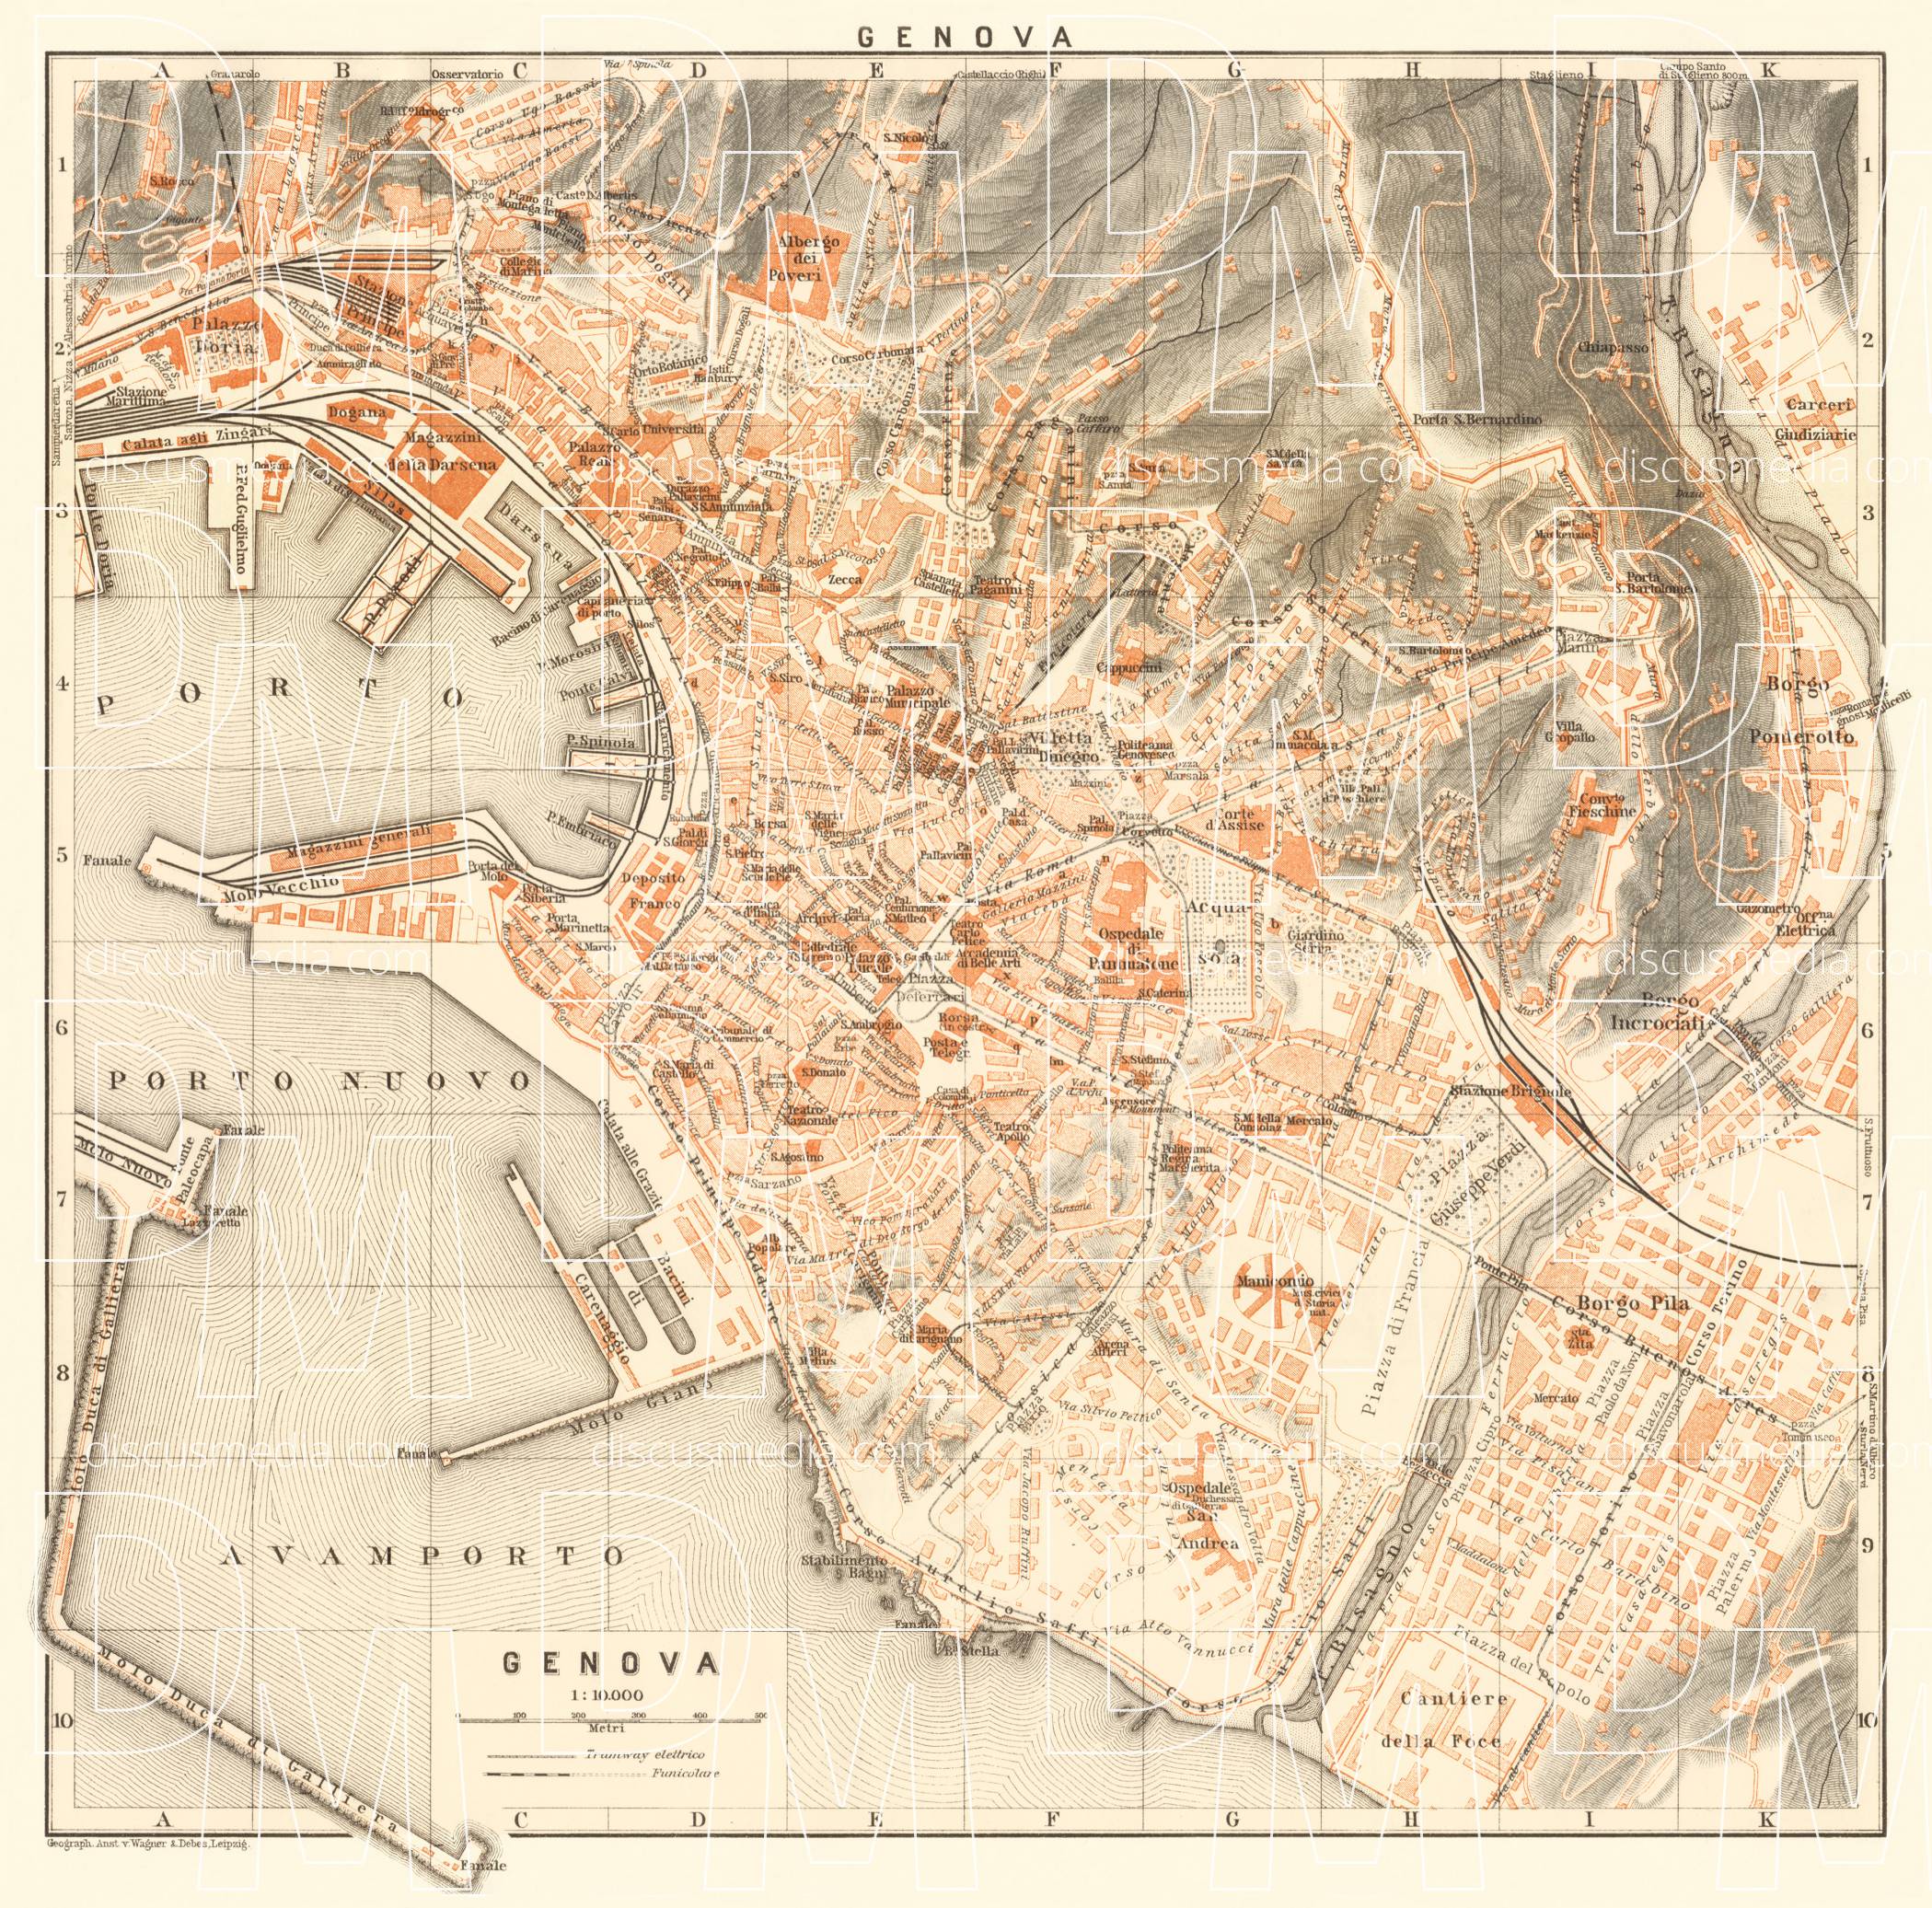 old-map-of-genoa-genova-in-1913-buy-vintage-map-replica-poster-print